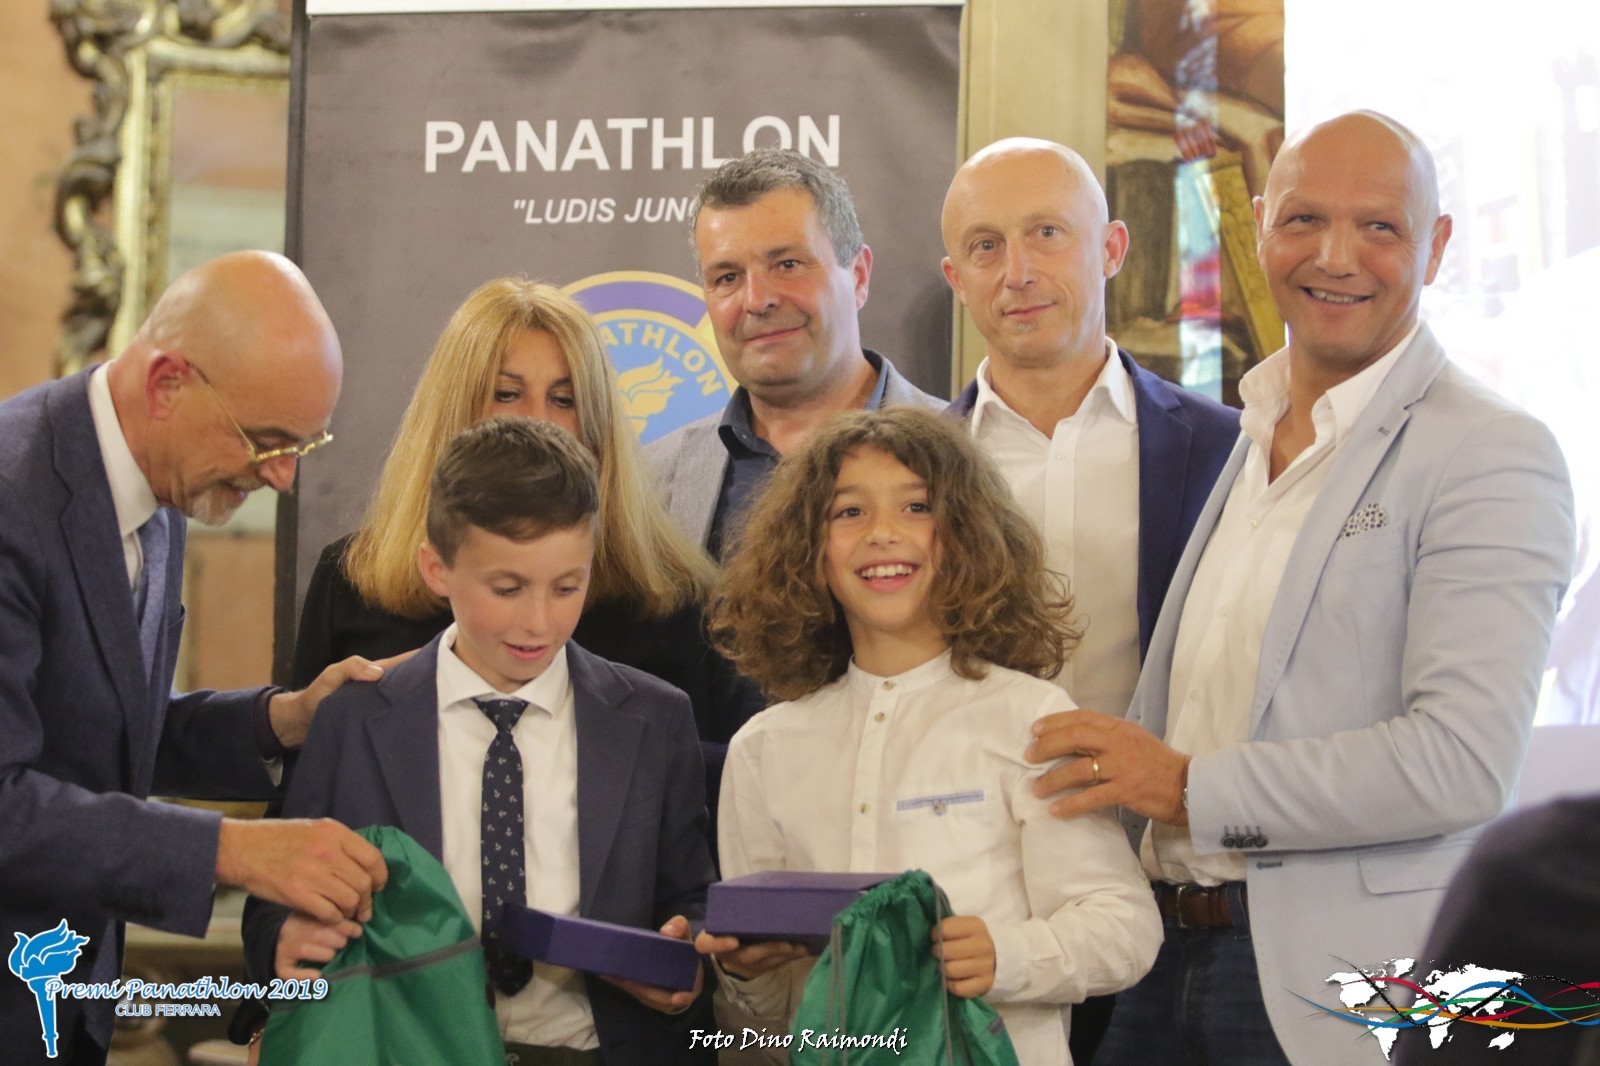 Alessandro Duran premia Eugenio Dondi e Kevin Dal Passo al Panathlon Club Ferrara